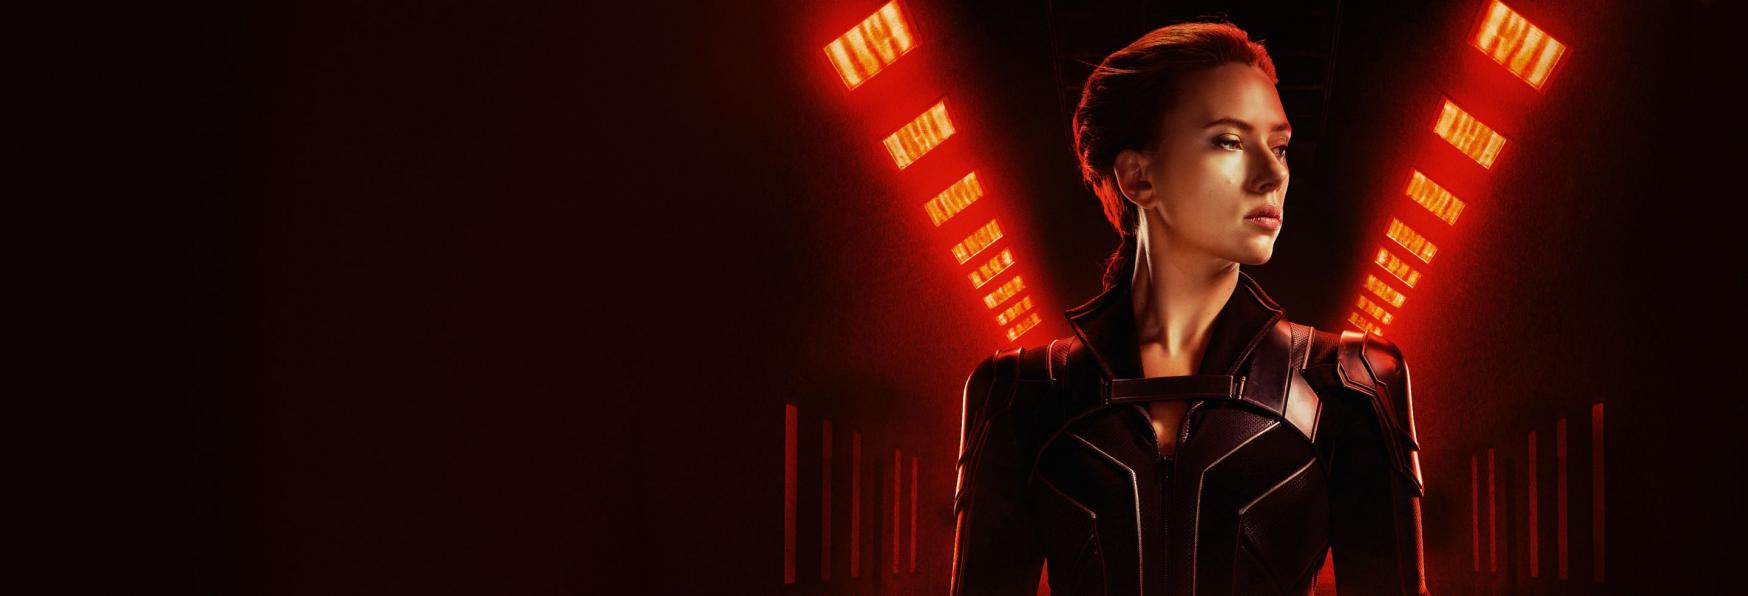 Just Cause: Scarlett Johansson sarà la Protagonista della nuova Serie TV di Prime Video